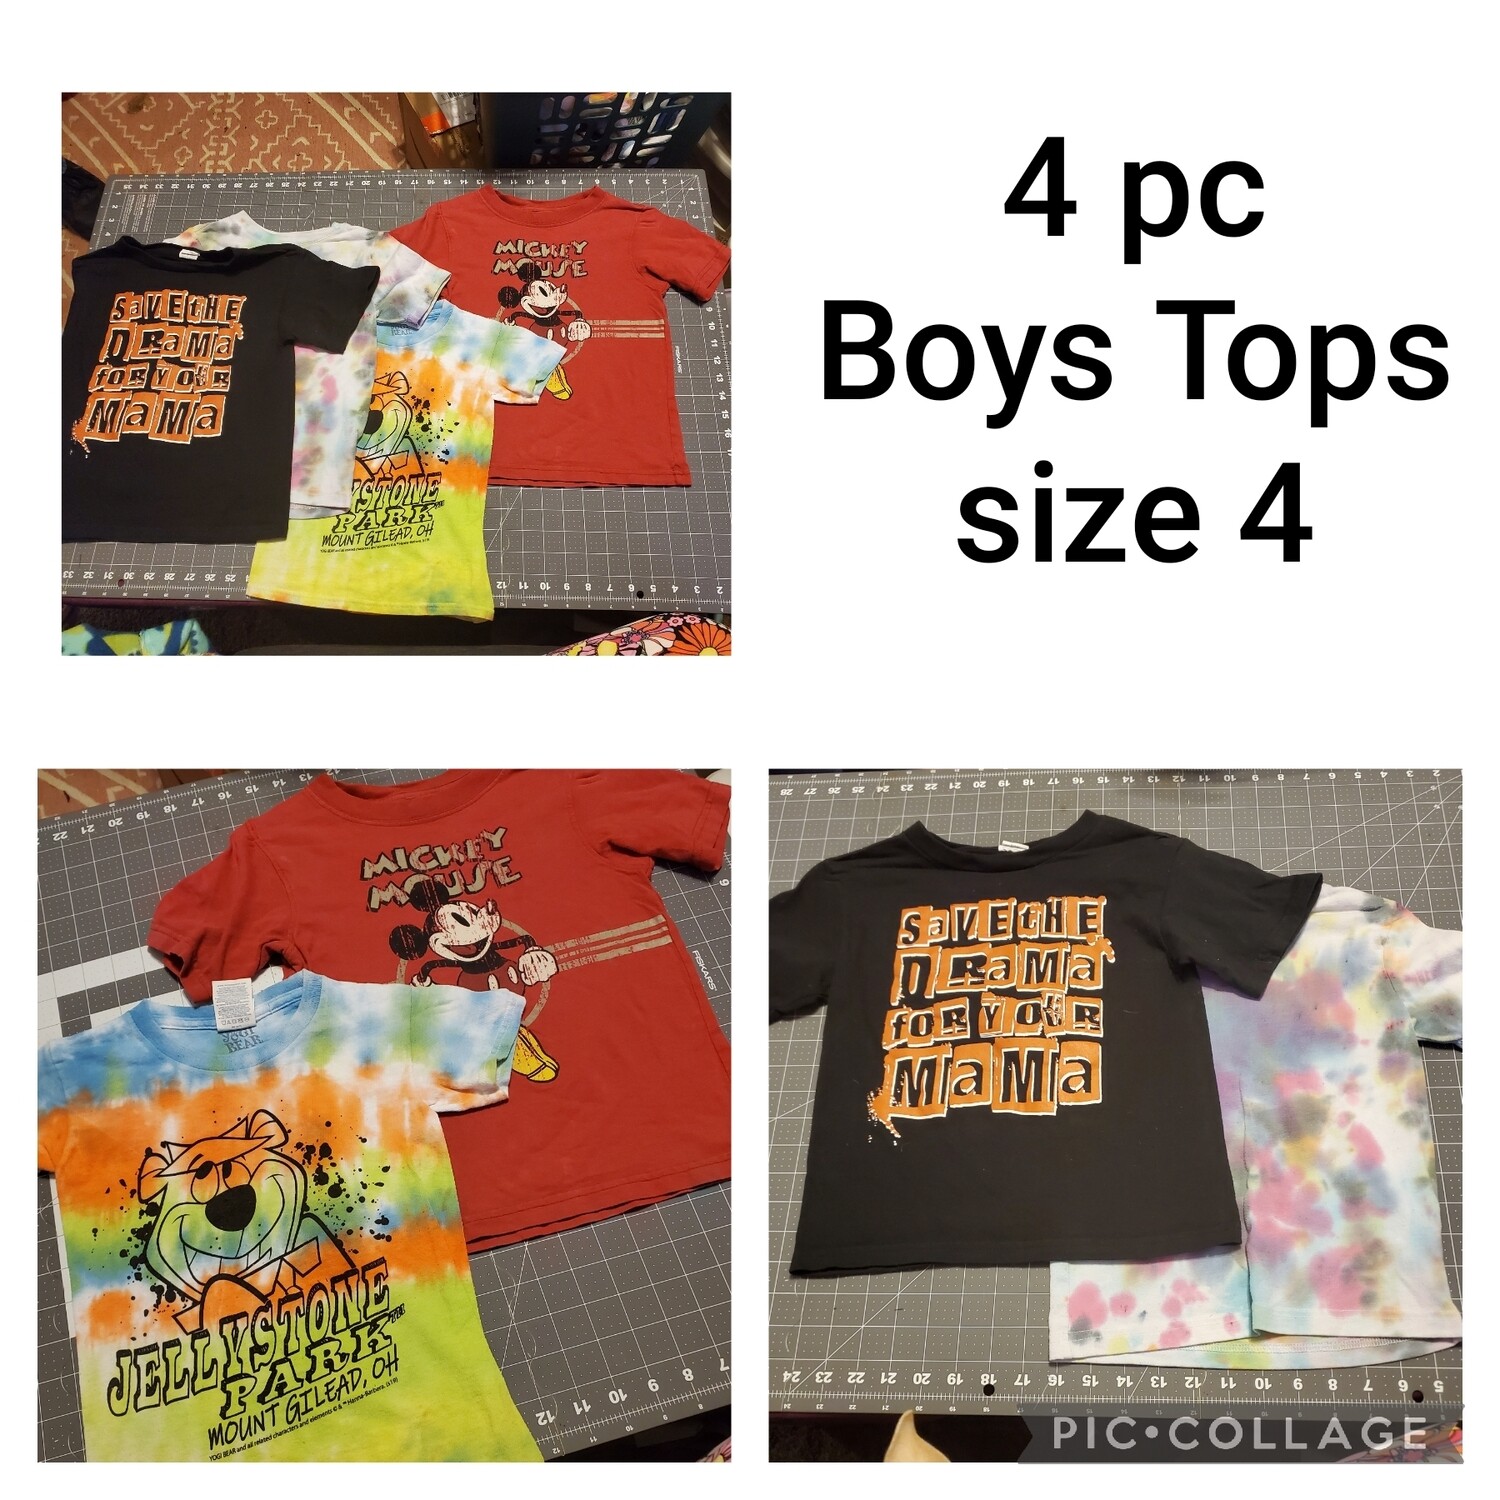 4 PC. Tshirts